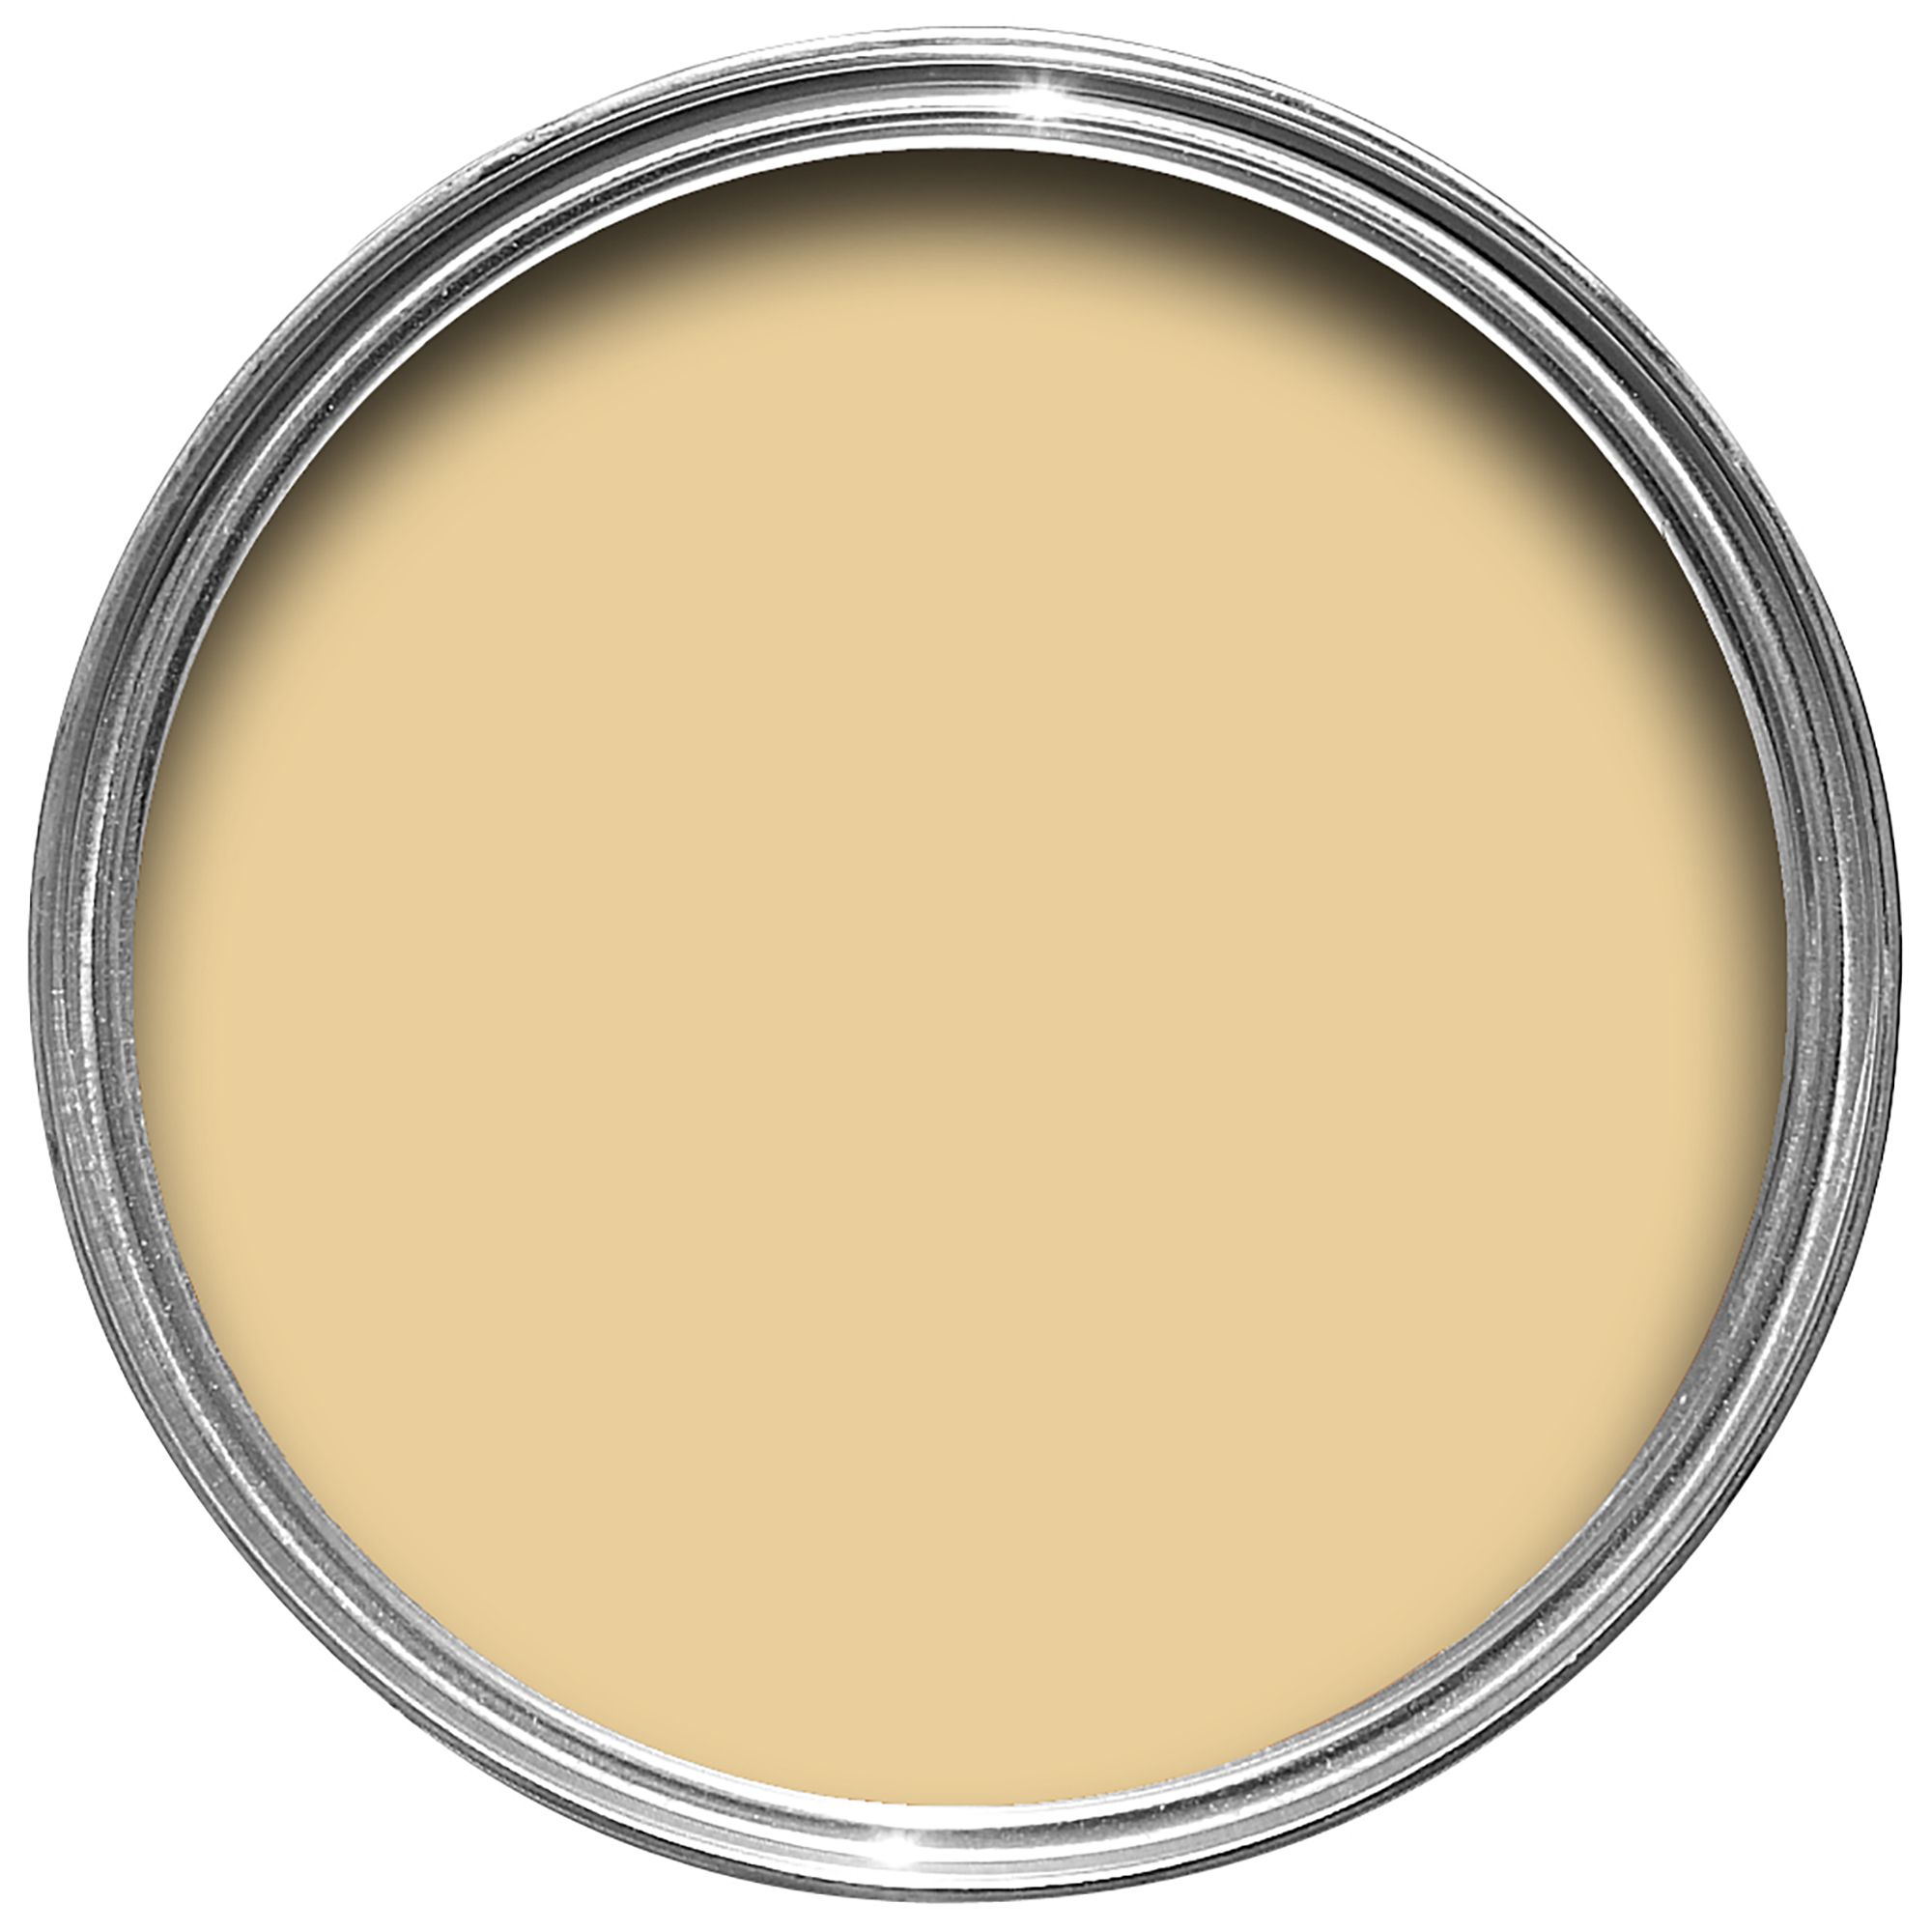 Farrow & Ball Modern Dorset Cream No.68 Matt Emulsion paint, 2.5L